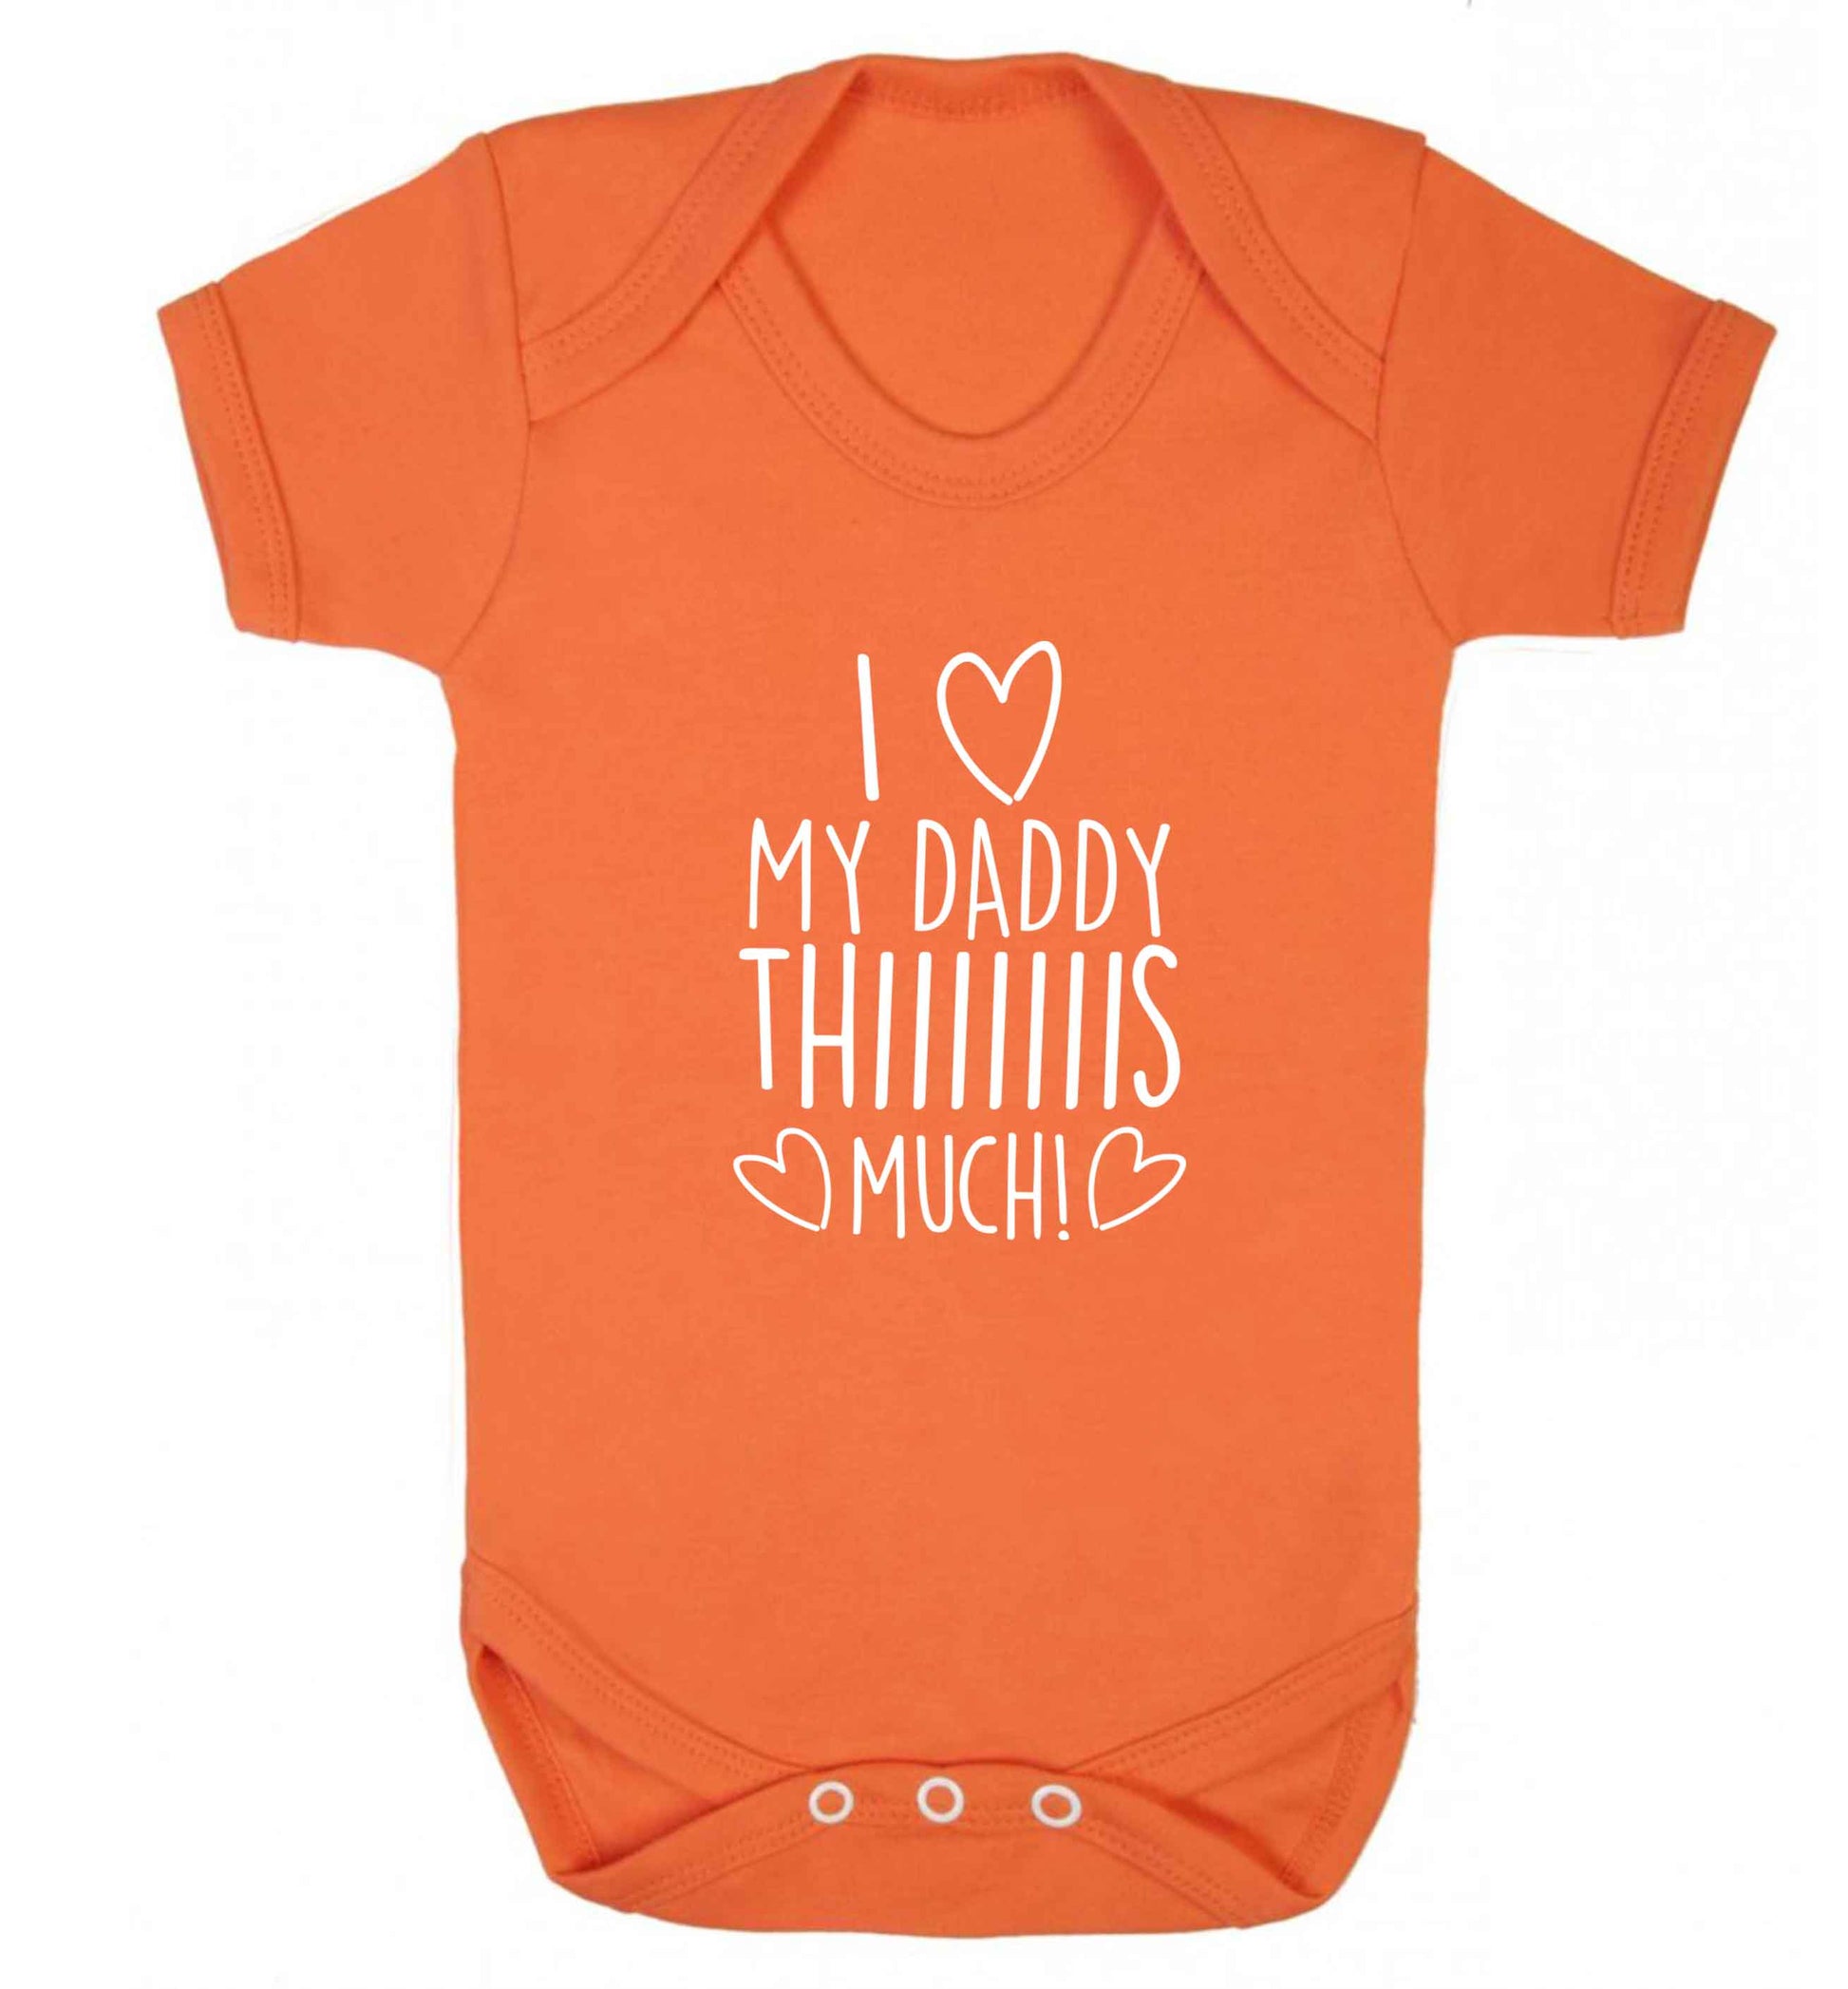 I love my daddy thiiiiis much! baby vest orange 18-24 months